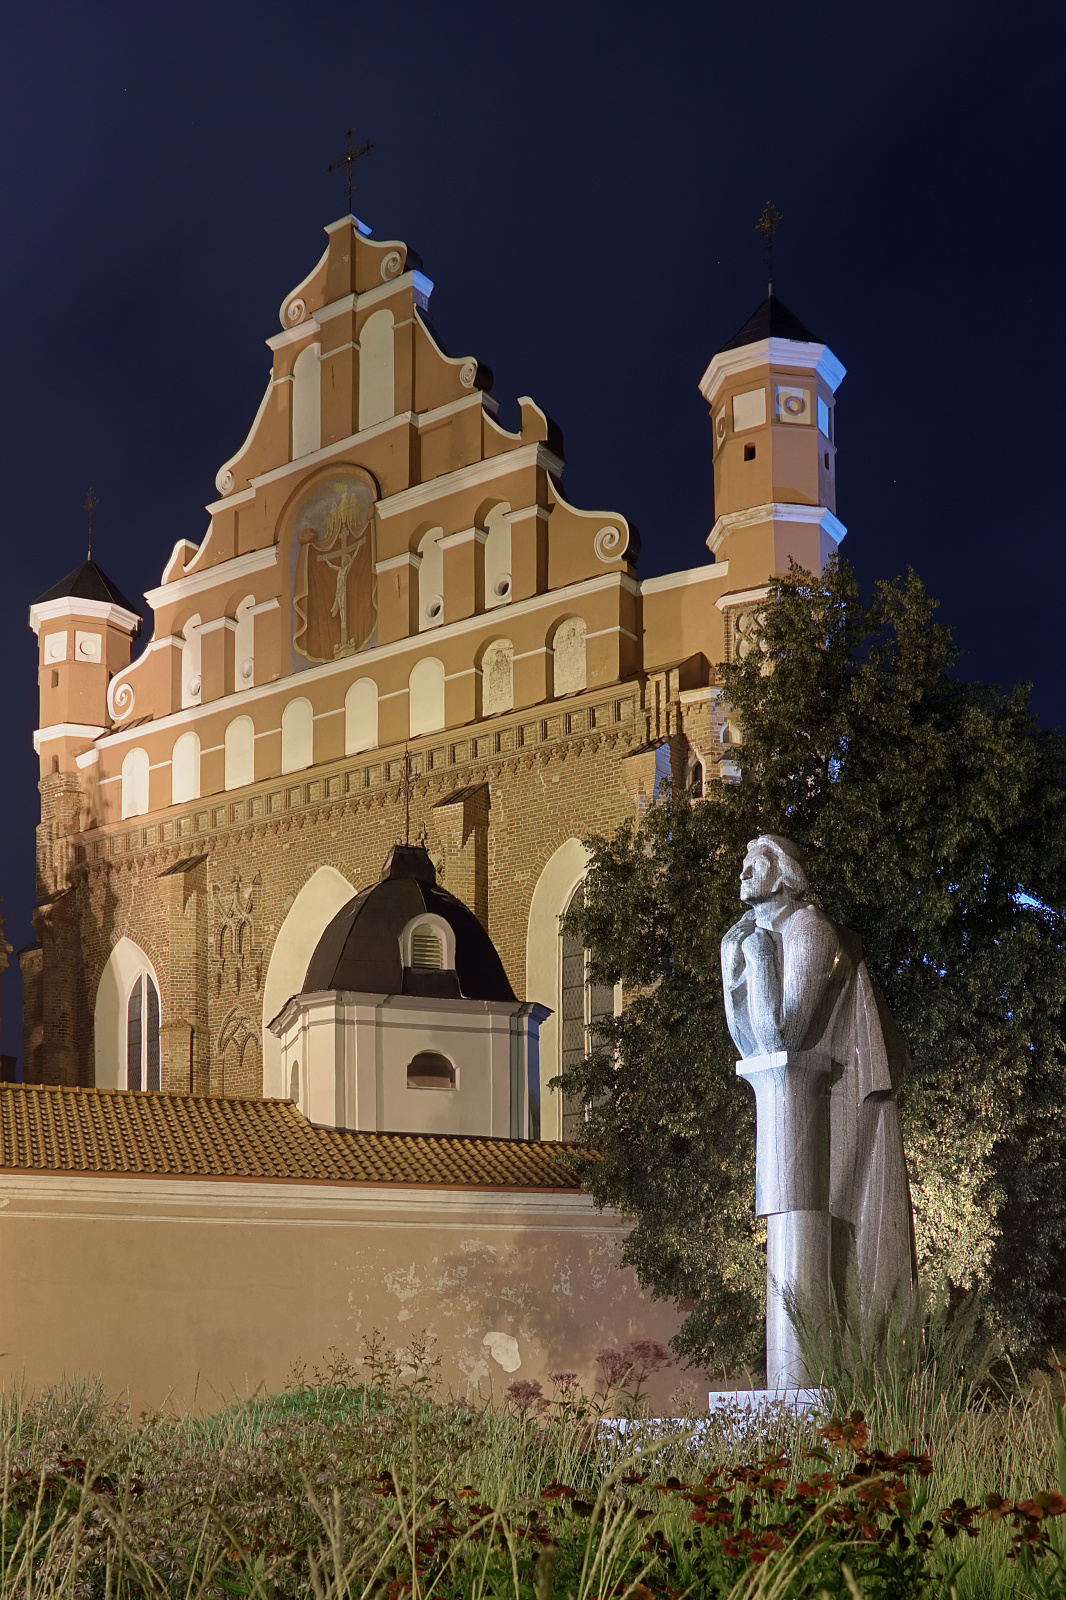 Pomnik Adama Mickiewicza oraz Kościół św. Franciszka i św. Bernarda (Podróże » Wilno » Kościoły i cerkwie)